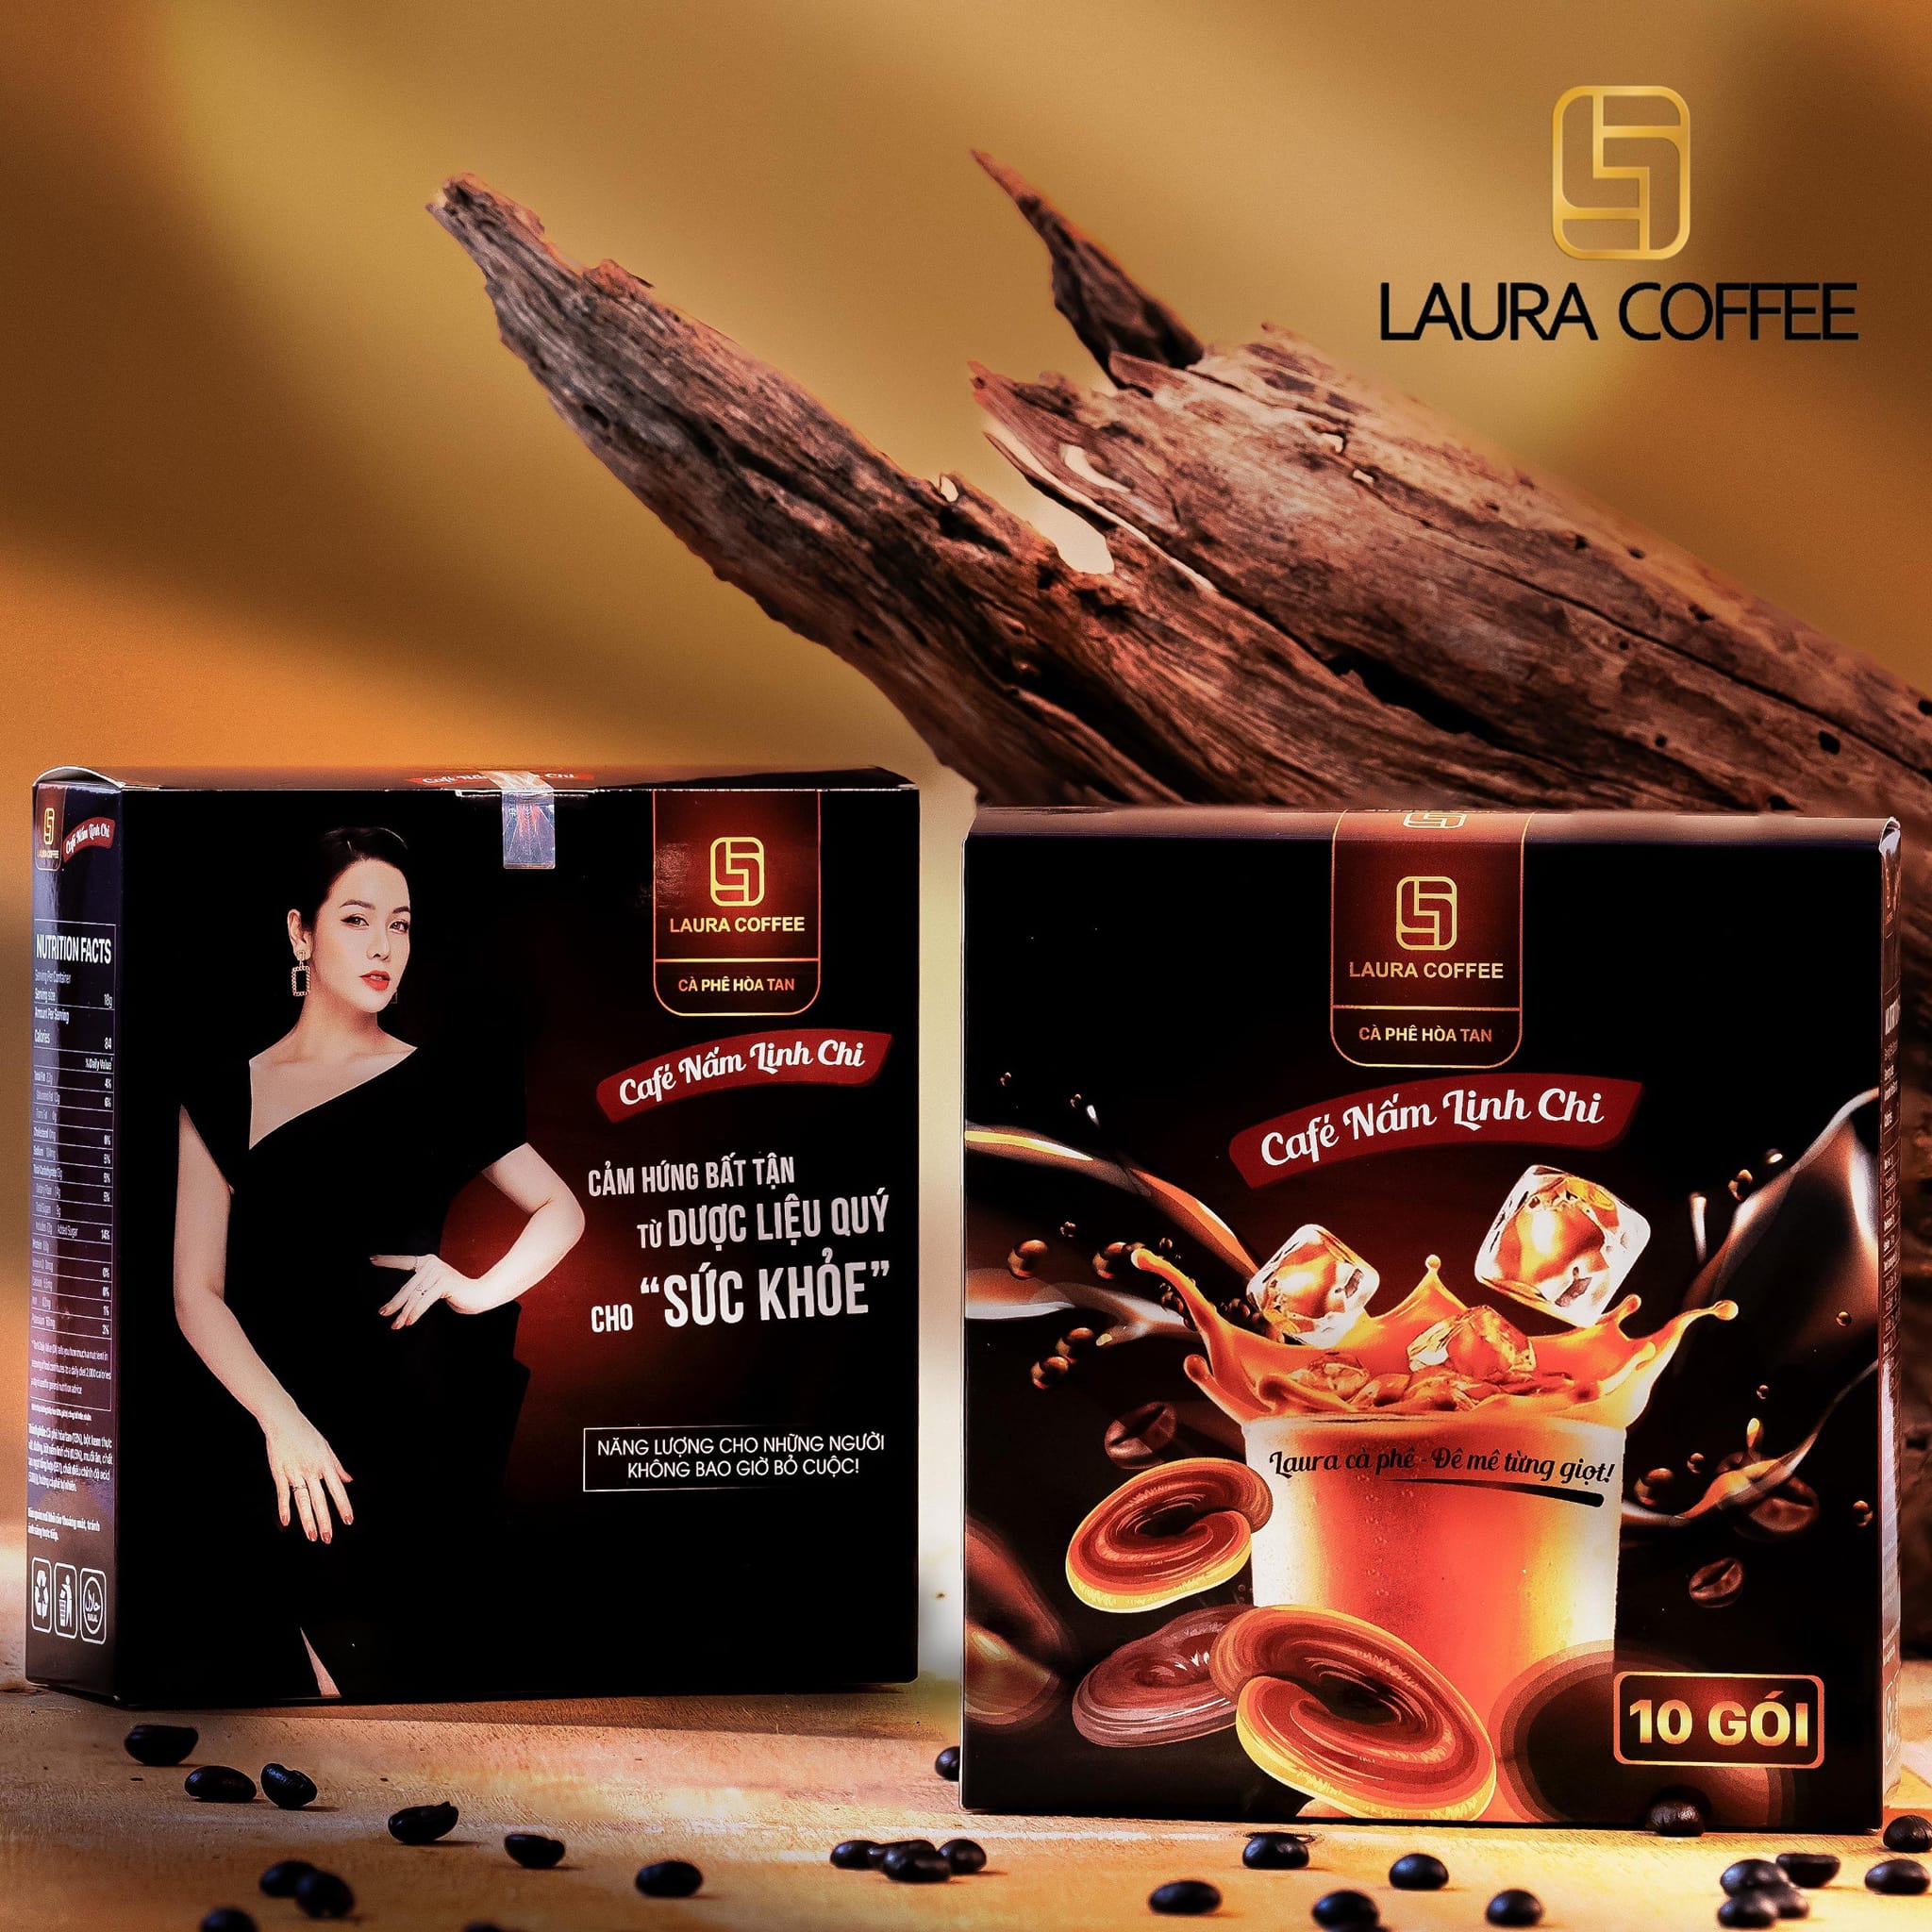 Combo 6 Hộp cà phê hòa tan cao cấp Laura Coffee Nhật Kim Anh (6 hộp x 10 gói)